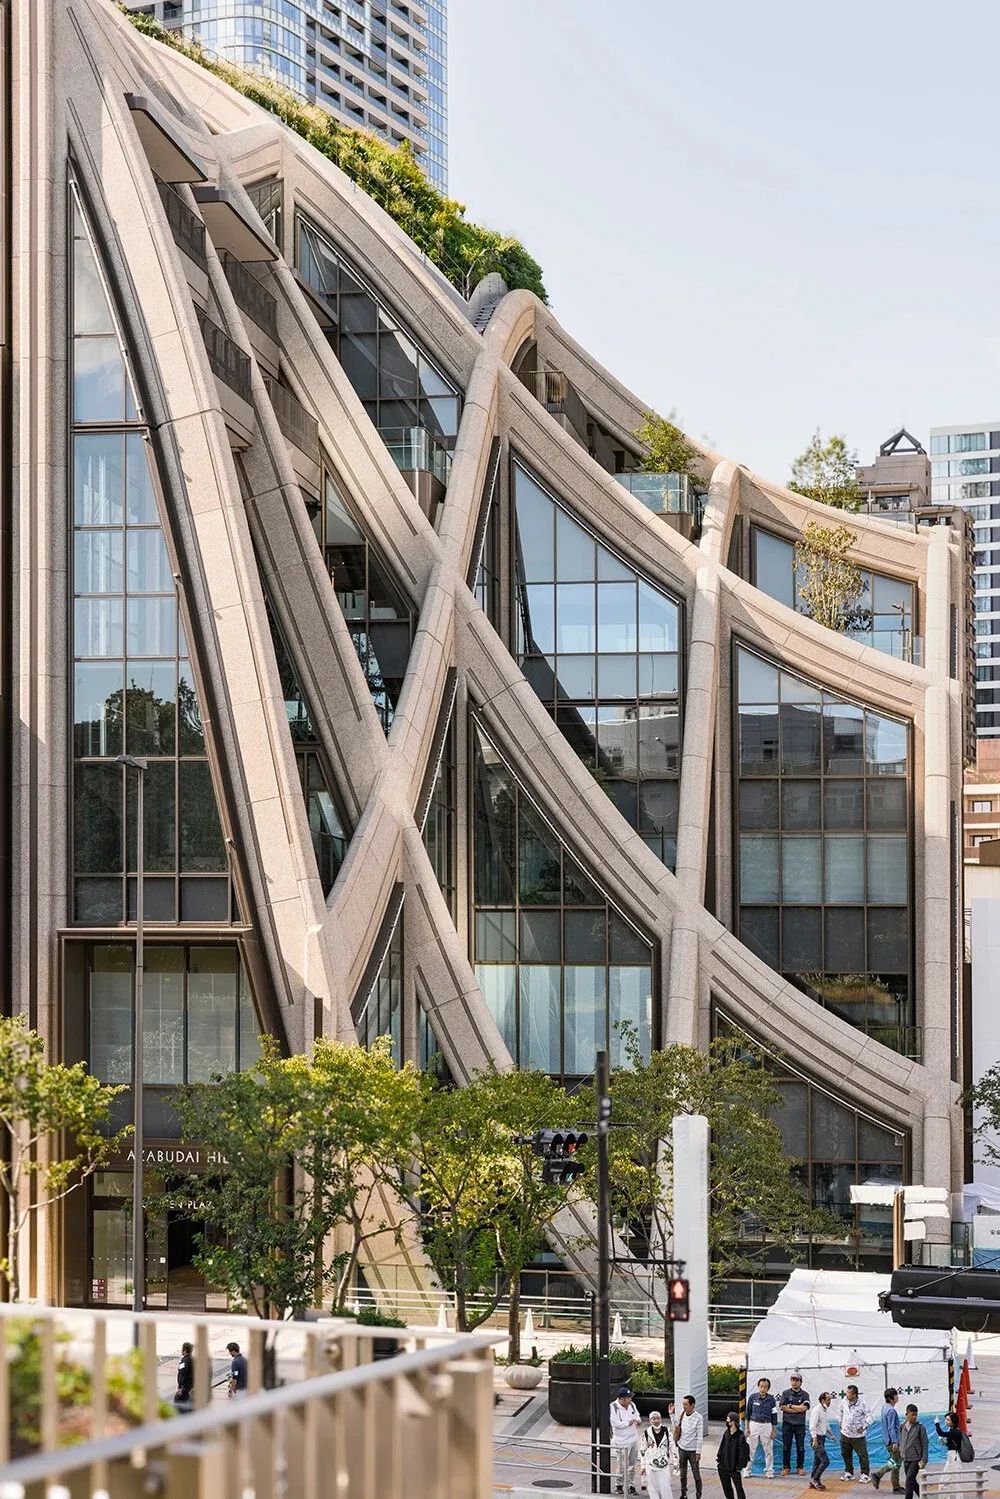 英國建築師 Thomas Heatherwick 在設計公共空間和裙房建築時，致力於促進通勤者、居民和公眾之間的有意義的互動。這個街區內布滿了樹木、鮮花和水景